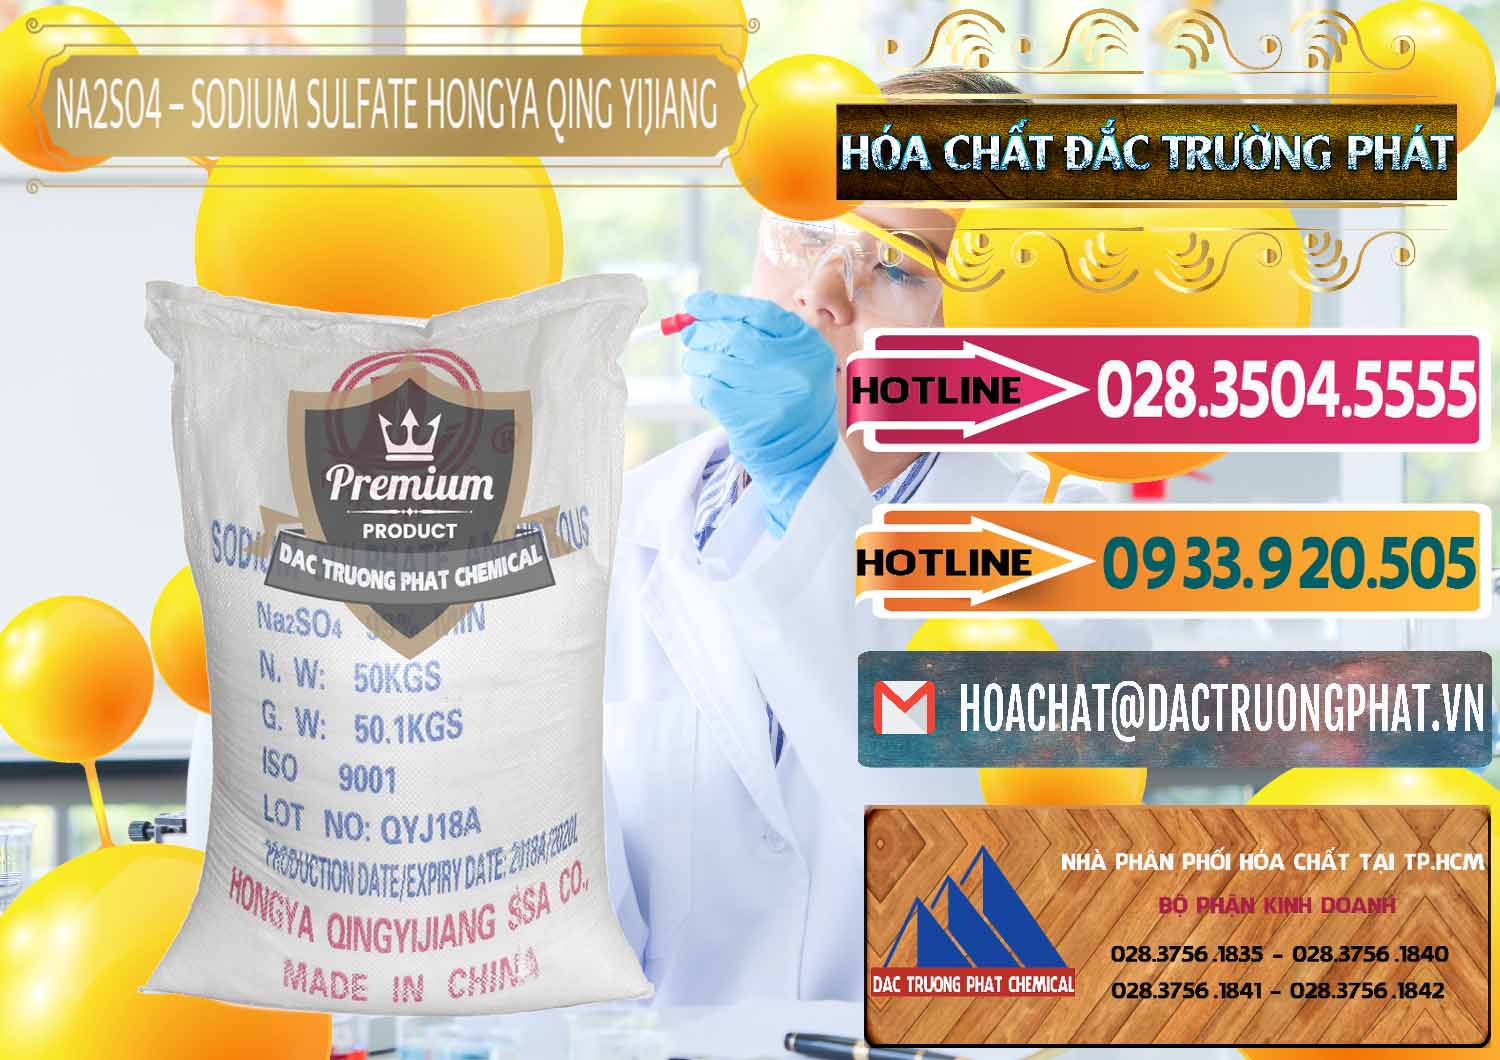 Công ty nhập khẩu và bán Sodium Sulphate - Muối Sunfat Na2SO4 Logo Cánh Bườm Hongya Qing Yi Trung Quốc China - 0098 - Cung cấp và kinh doanh hóa chất tại TP.HCM - dactruongphat.vn